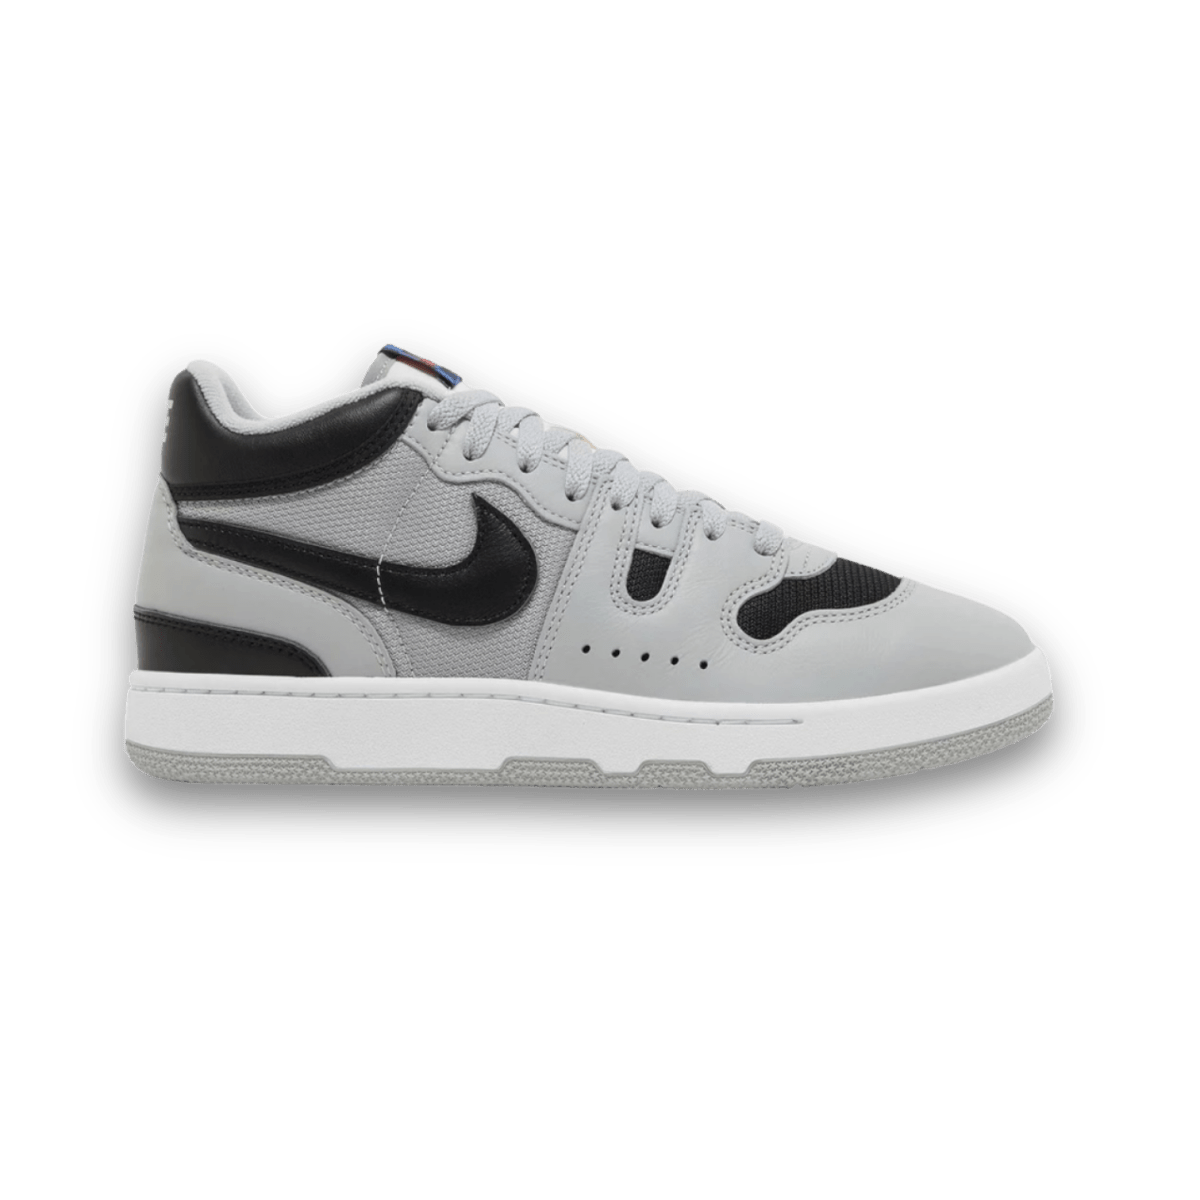 Mac Attack QS SP Black & Grey Black - Low Sneaker - Jawns on Fire Sneakers & Streetwear